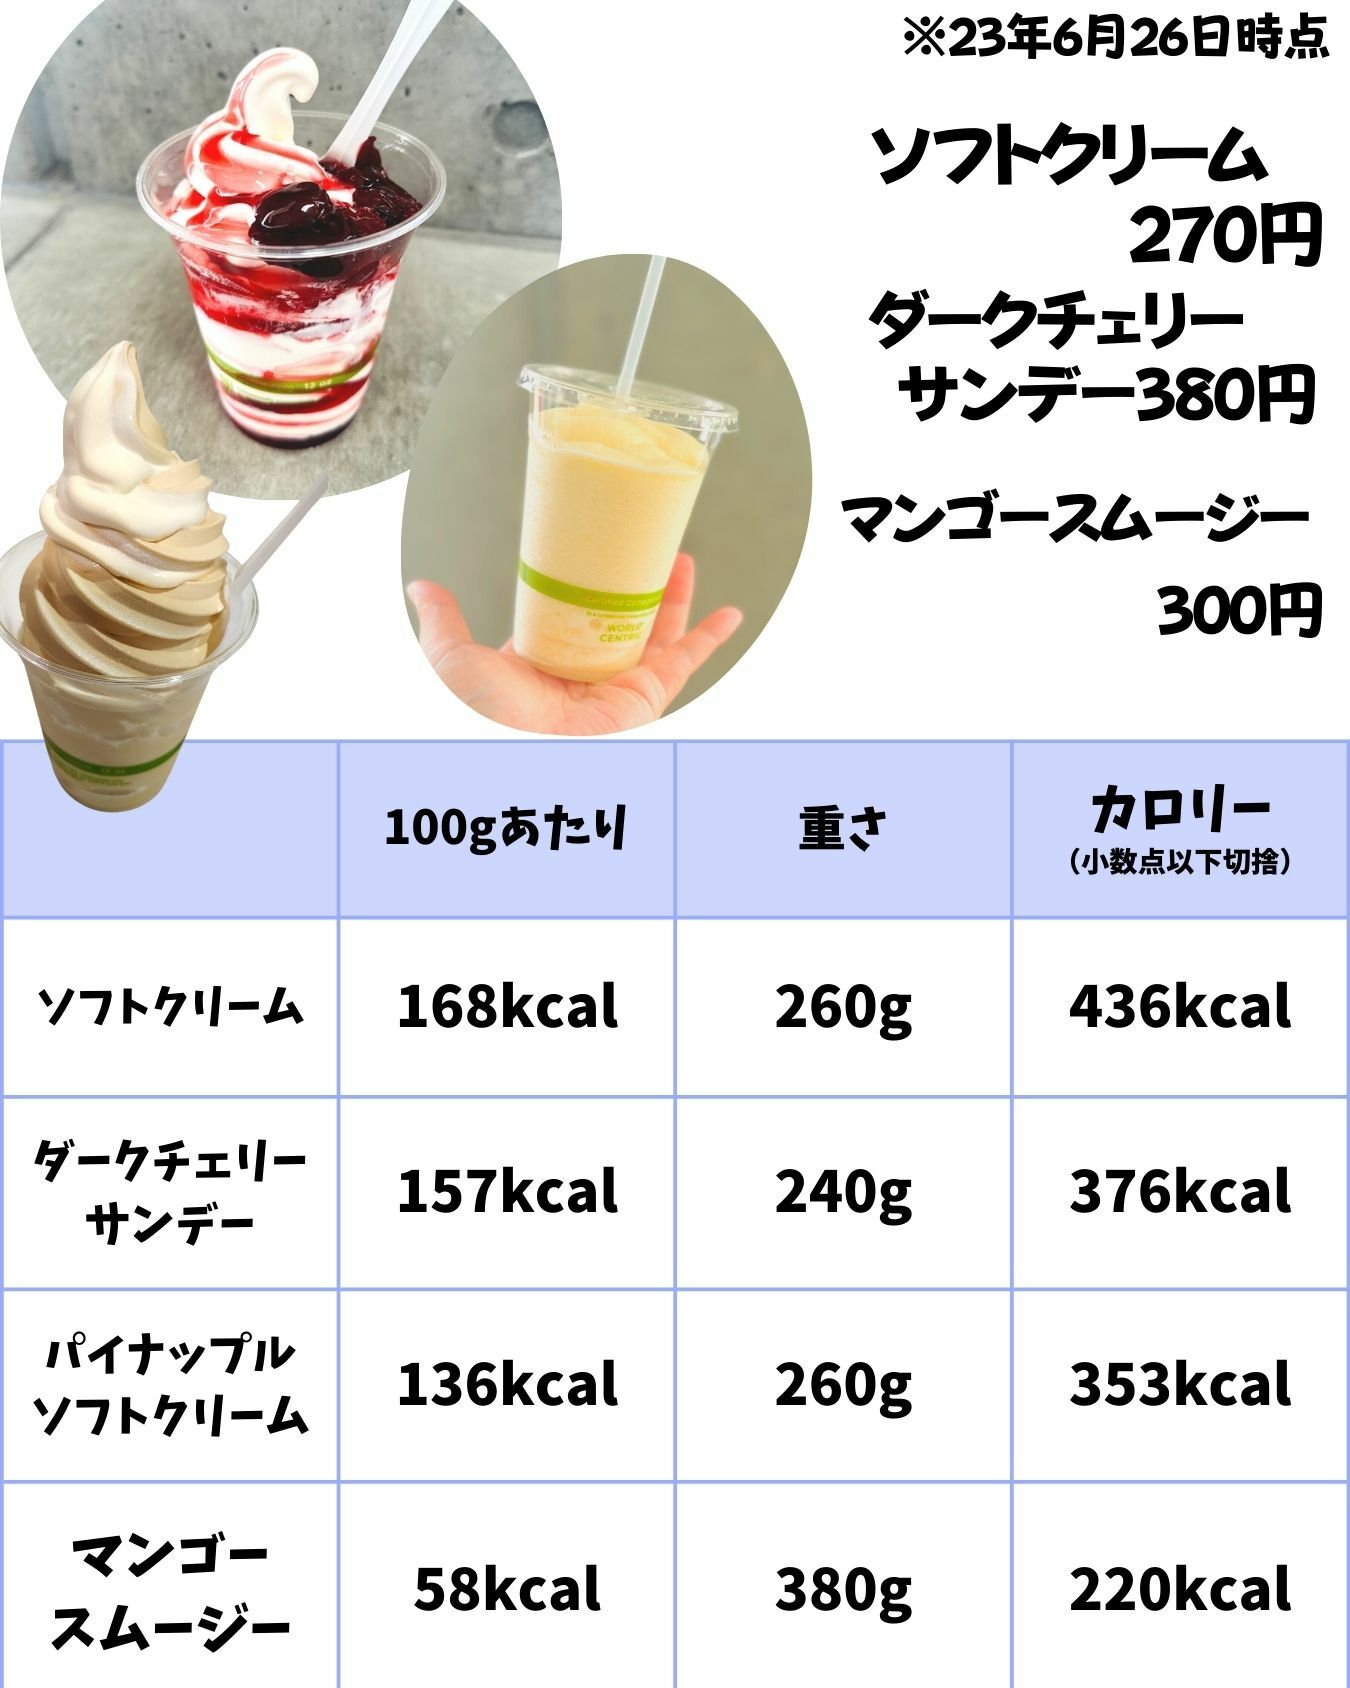 【コストコ】ソフトクリーム、ダークチェリーサンデー、スムージーのカロリー